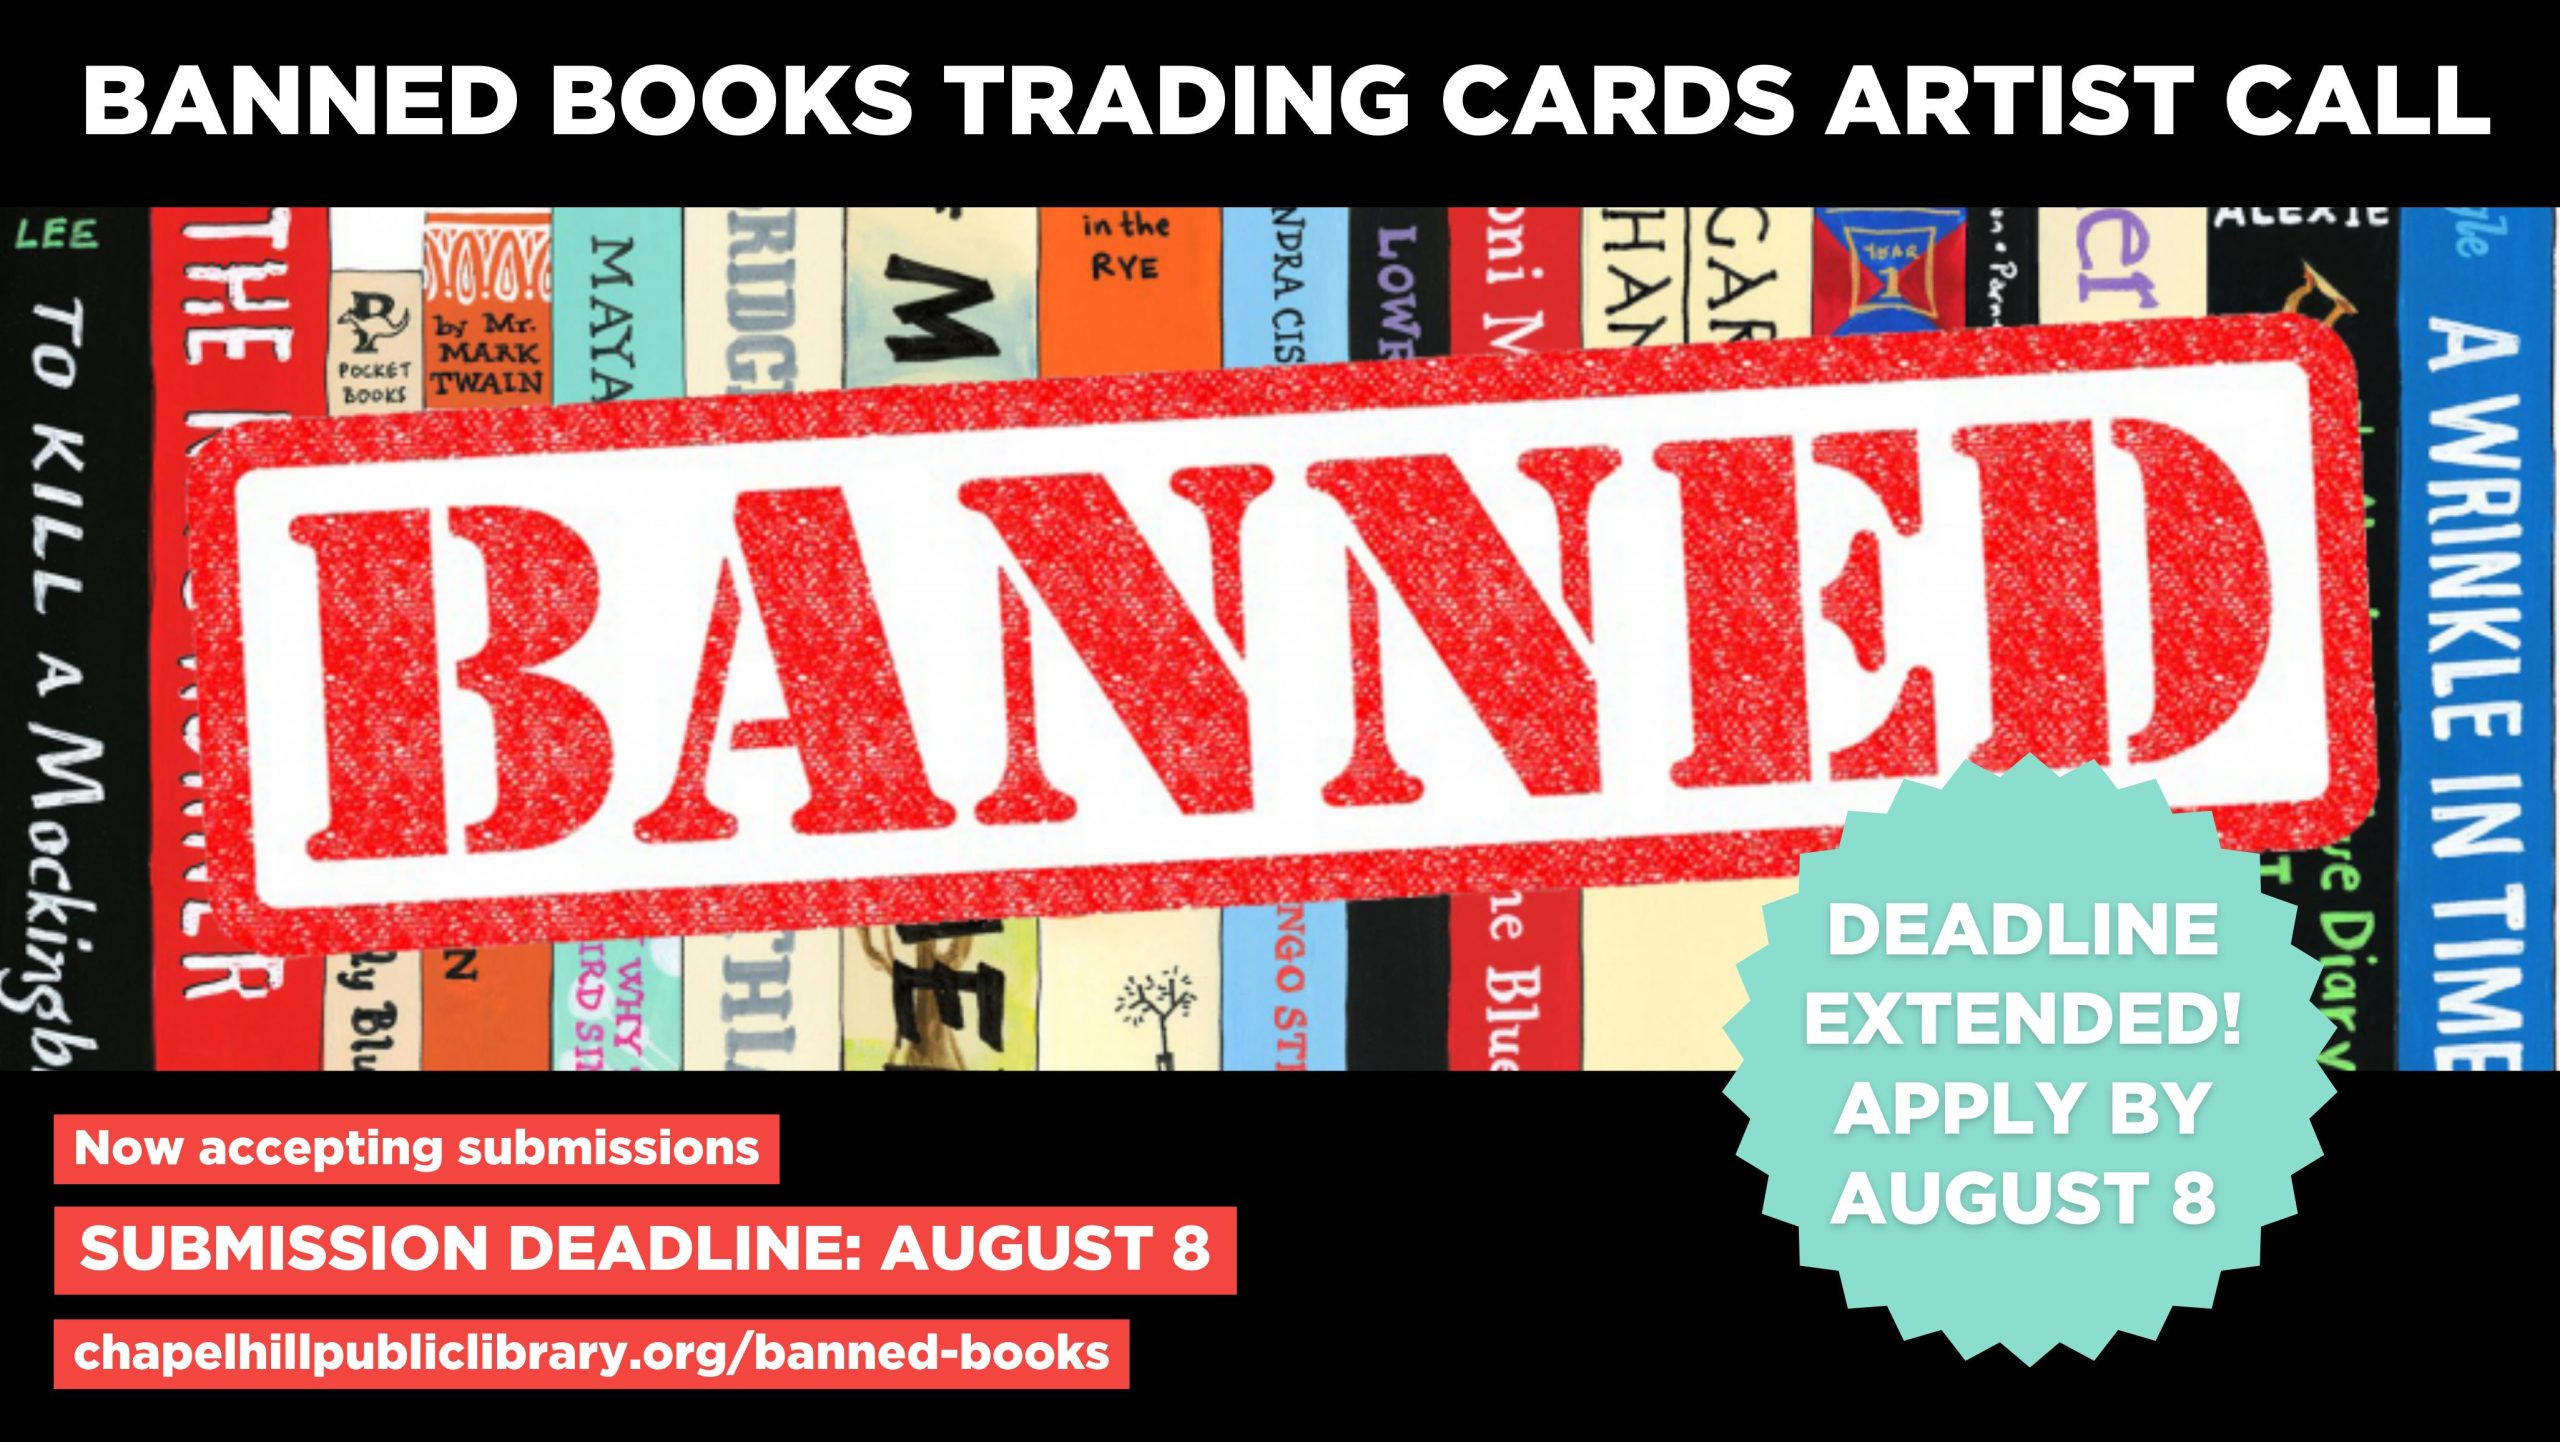 Banned Books Week Deadline Extended